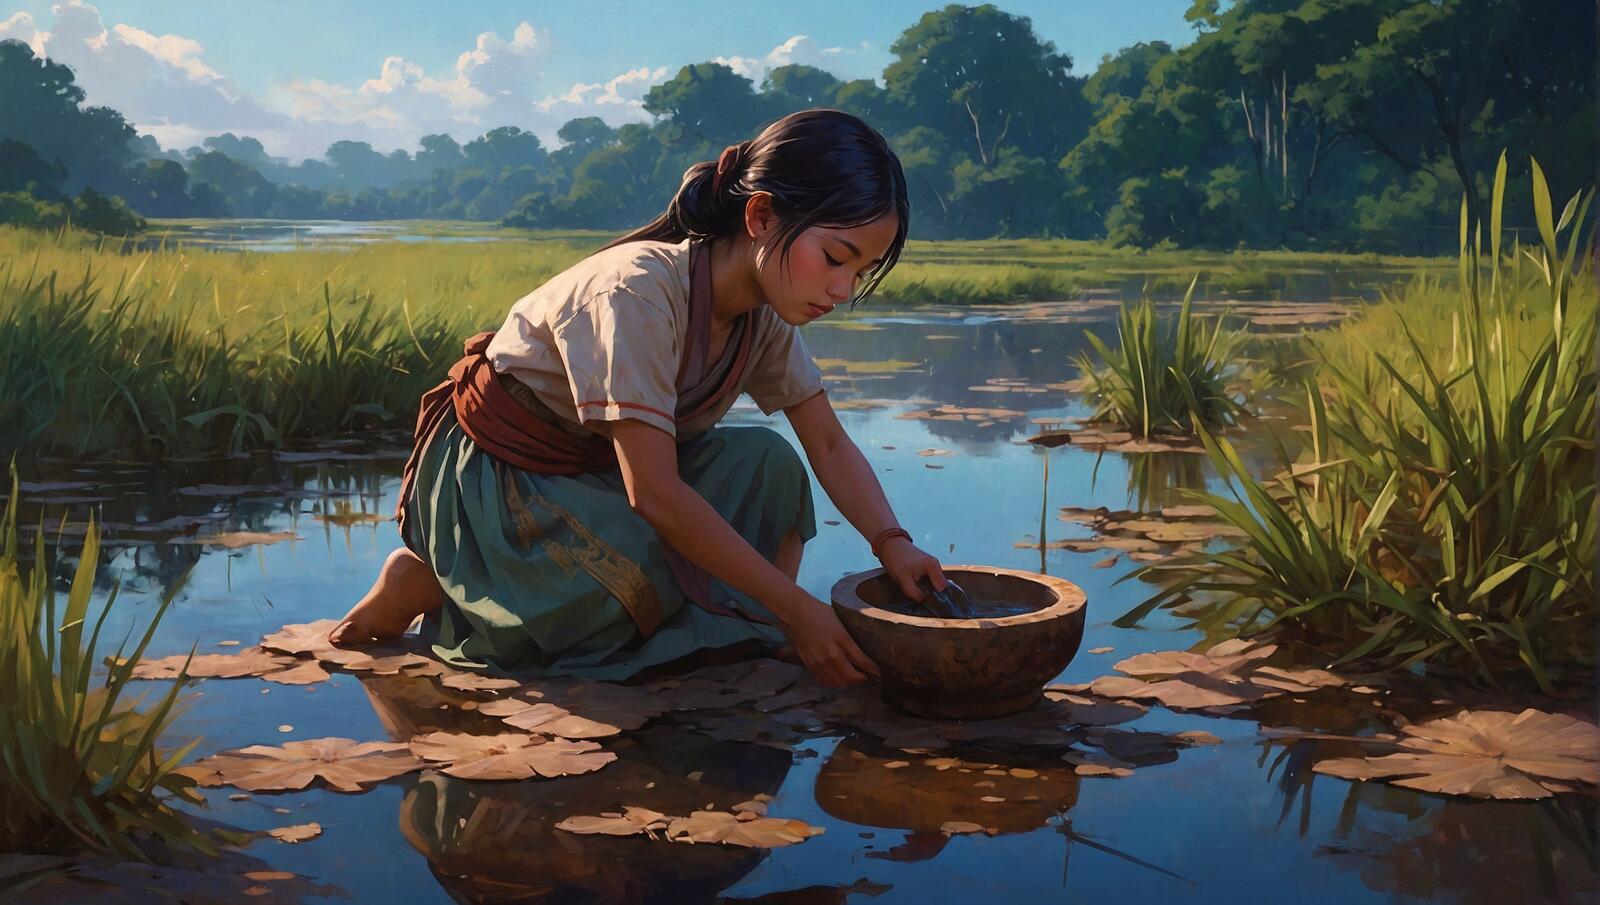 Бесплатное фото Женщина моет воду из горшка в болоте